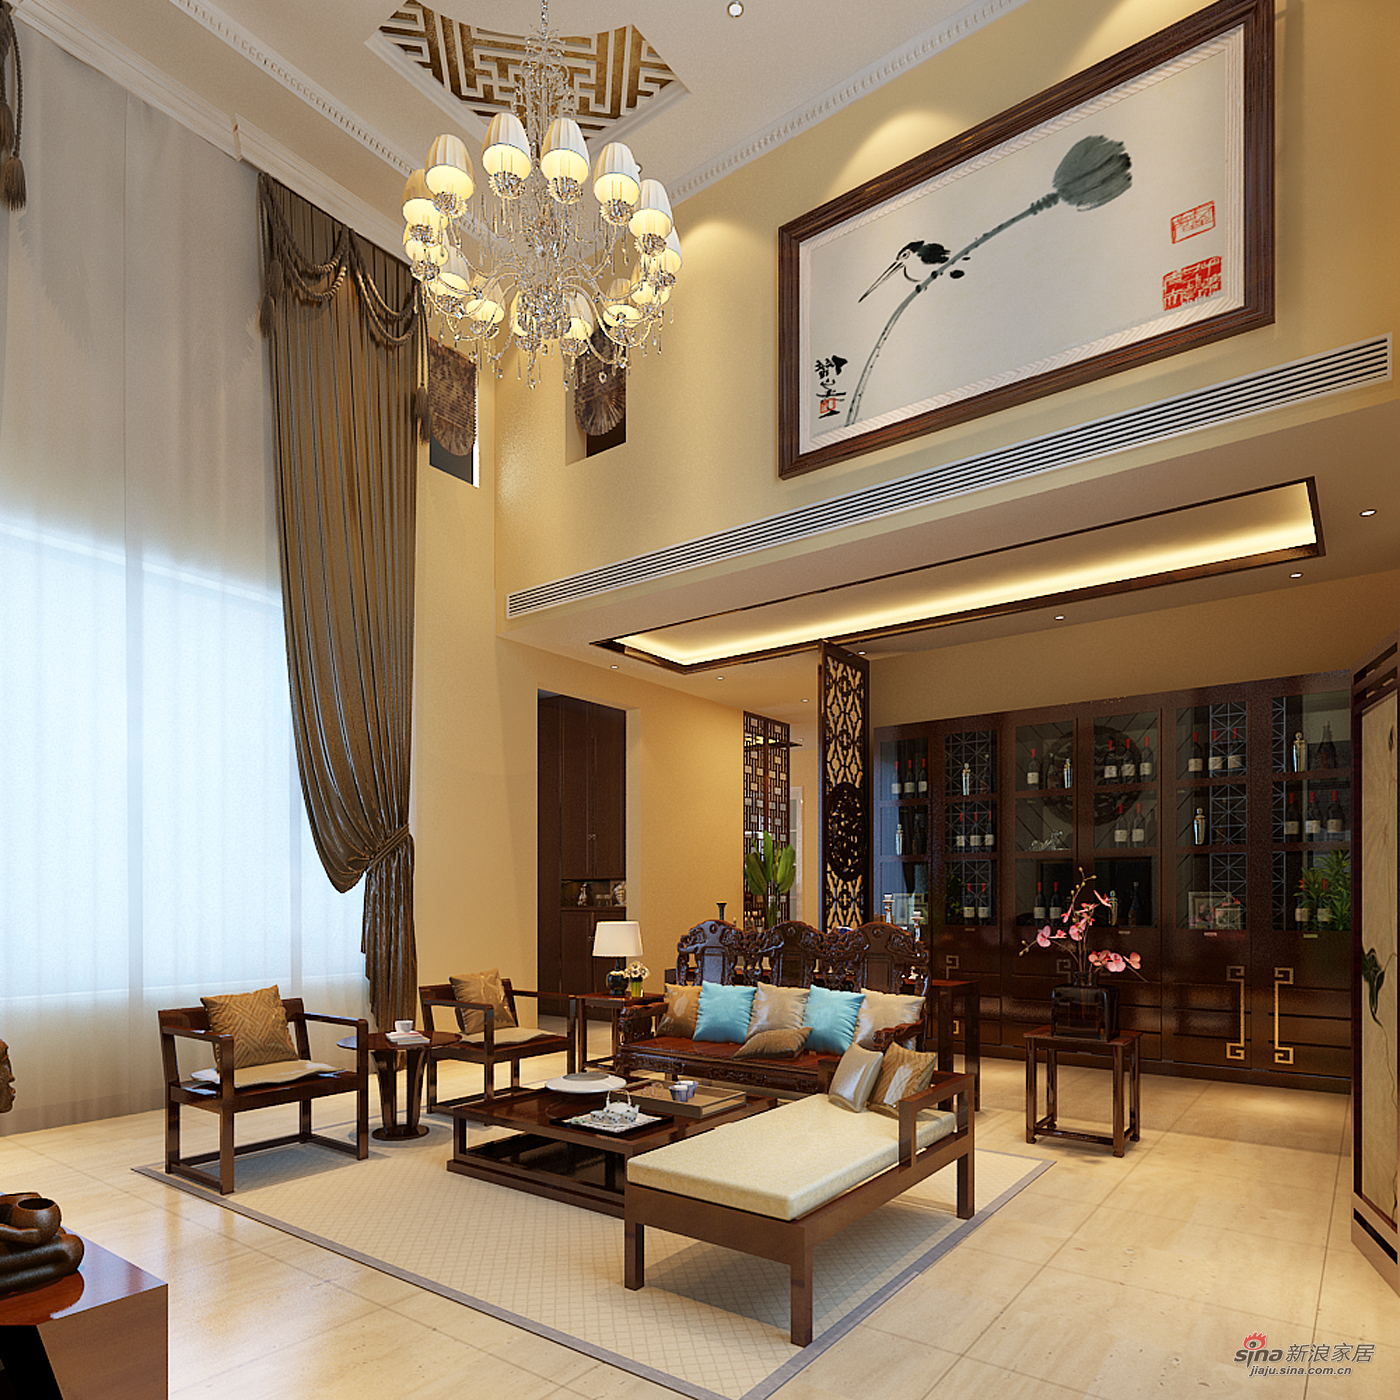 中式 别墅 客厅图片来自用户1907659705在北京湾345平简中式独栋别墅装修18的分享